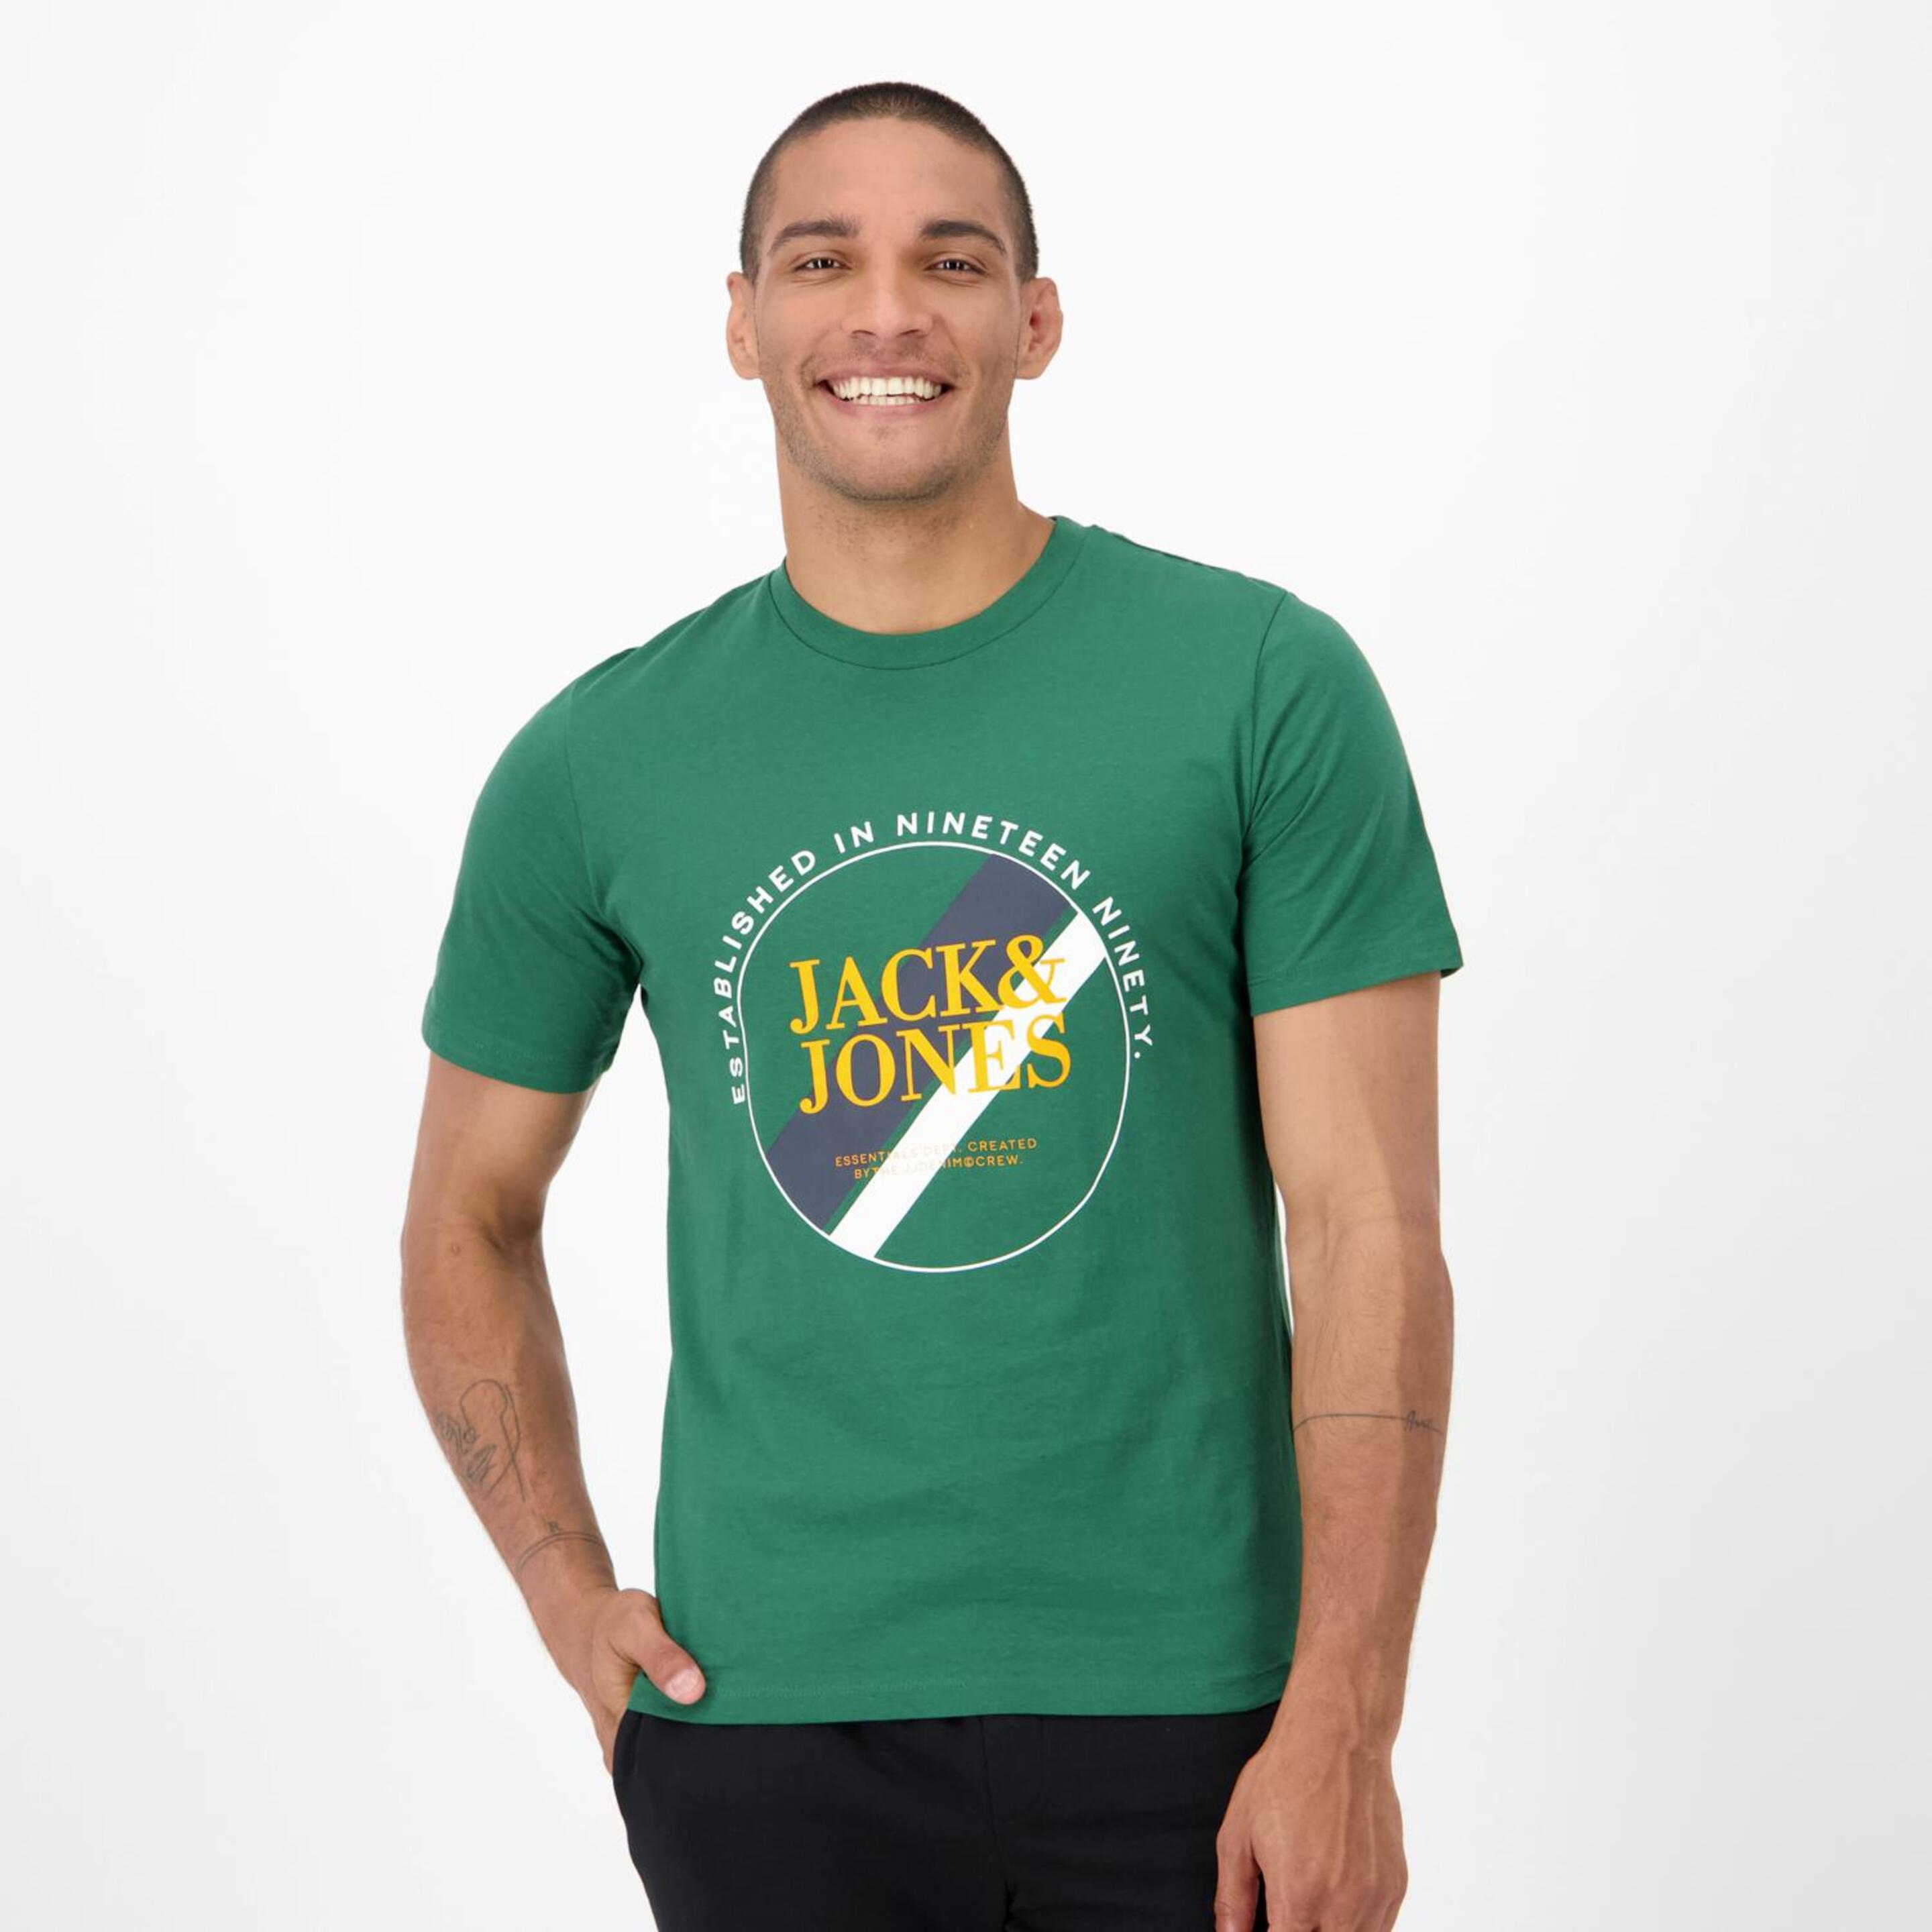 Jack & Jones Loof - verde - Camiseta Hombre